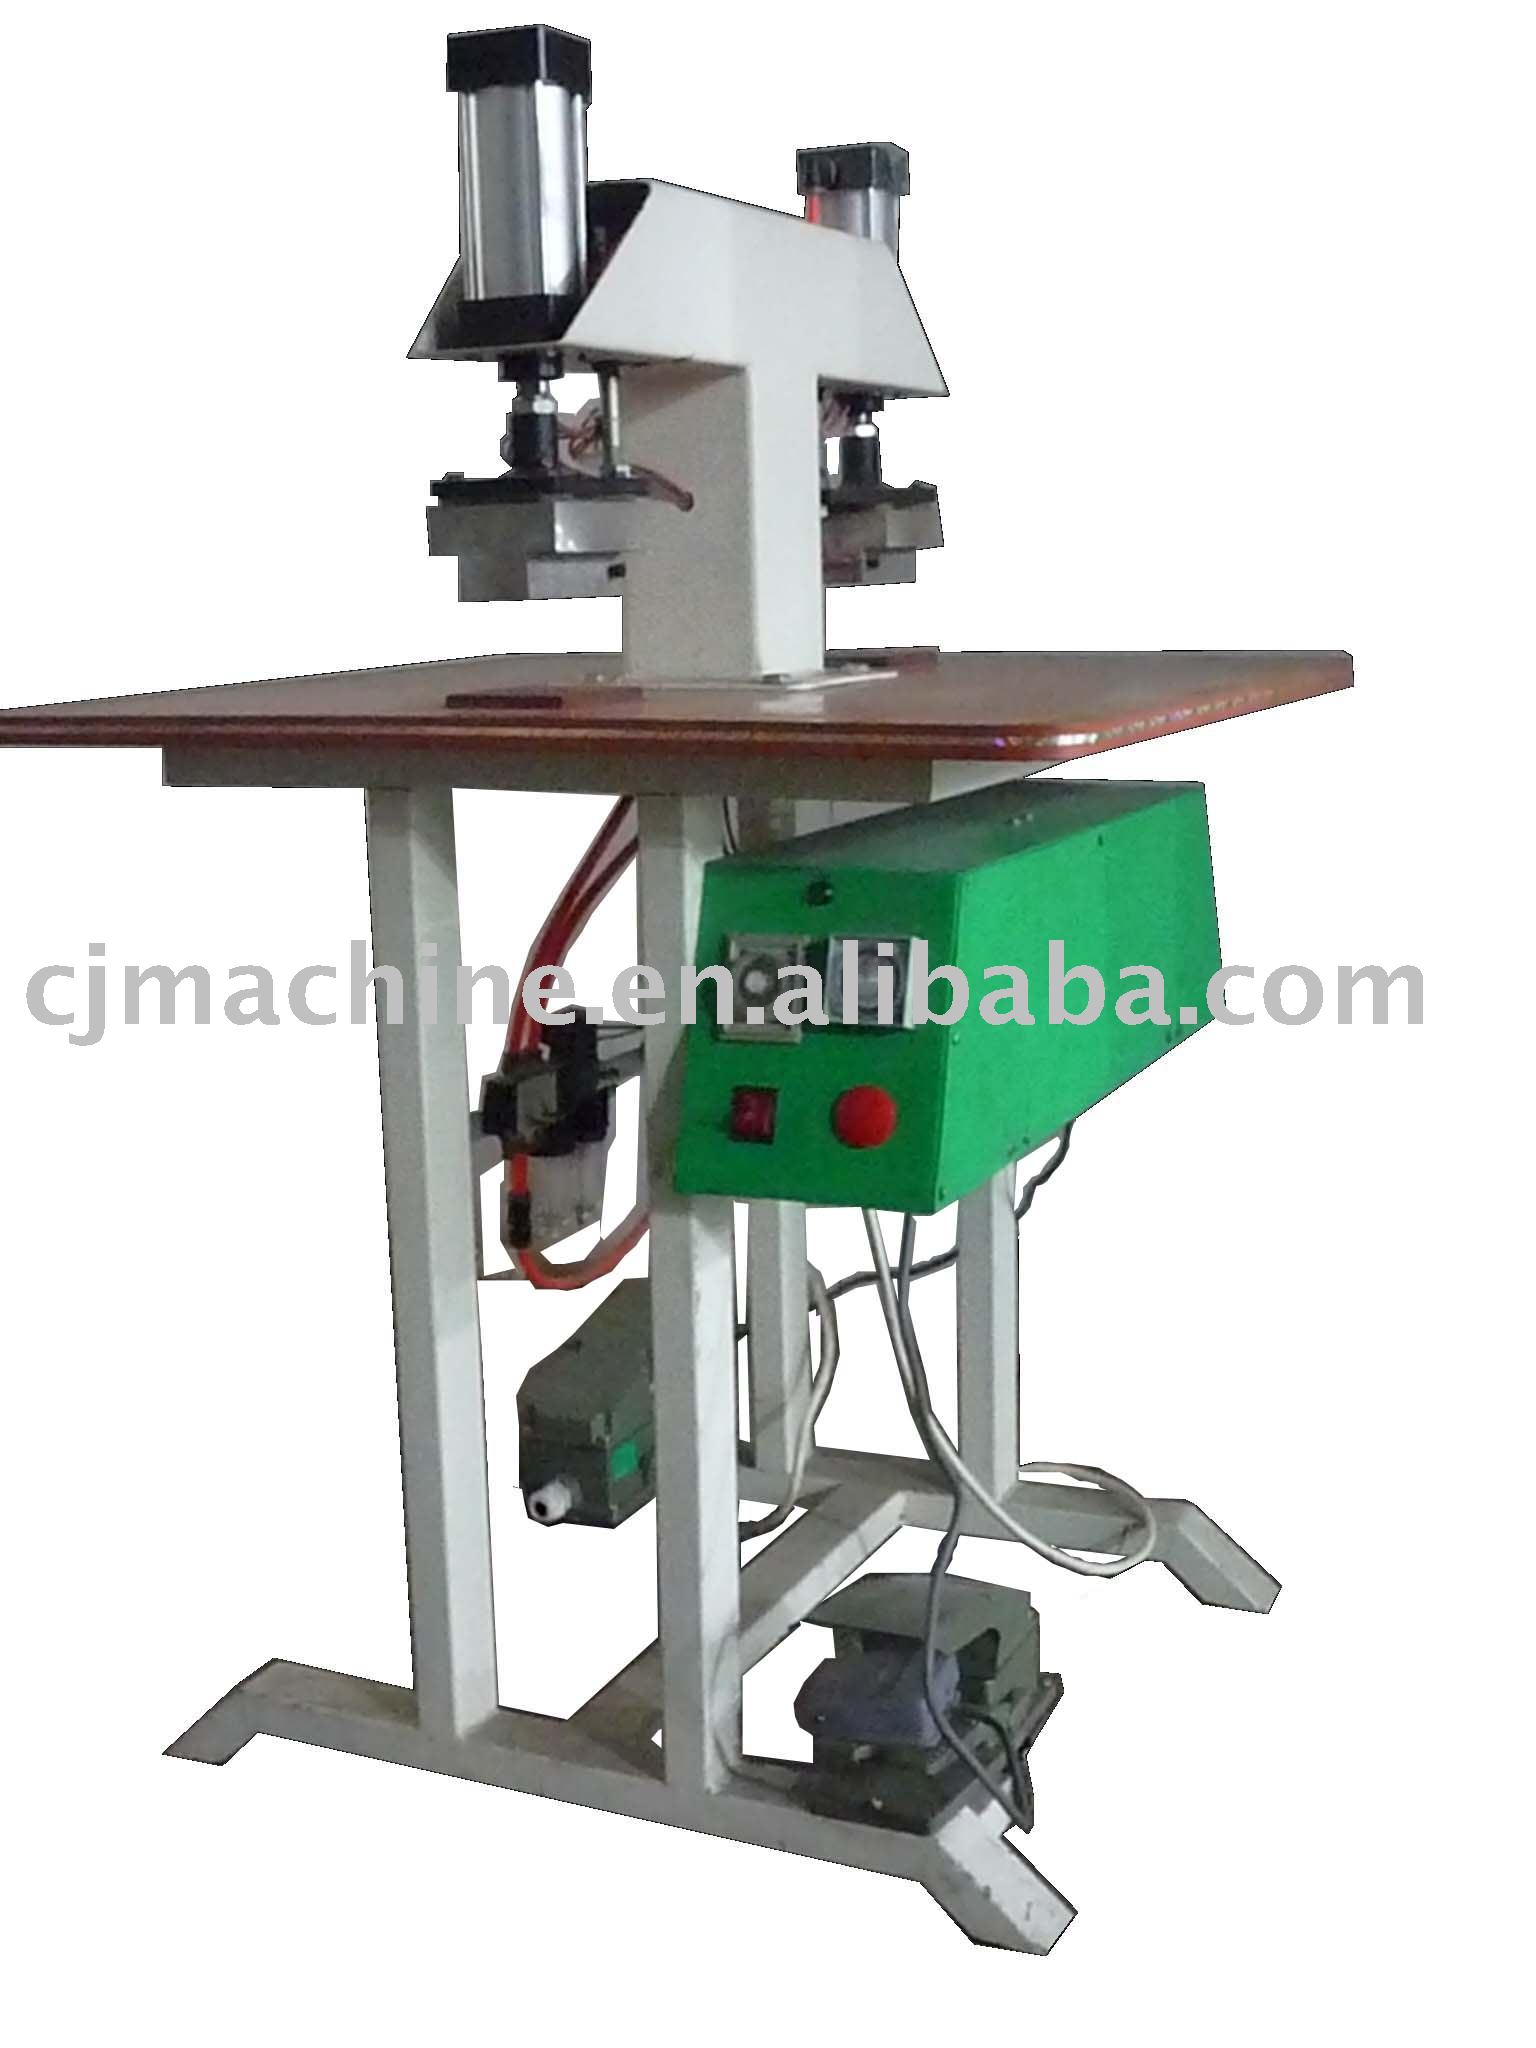 CJ-802 Heat transfer printing press